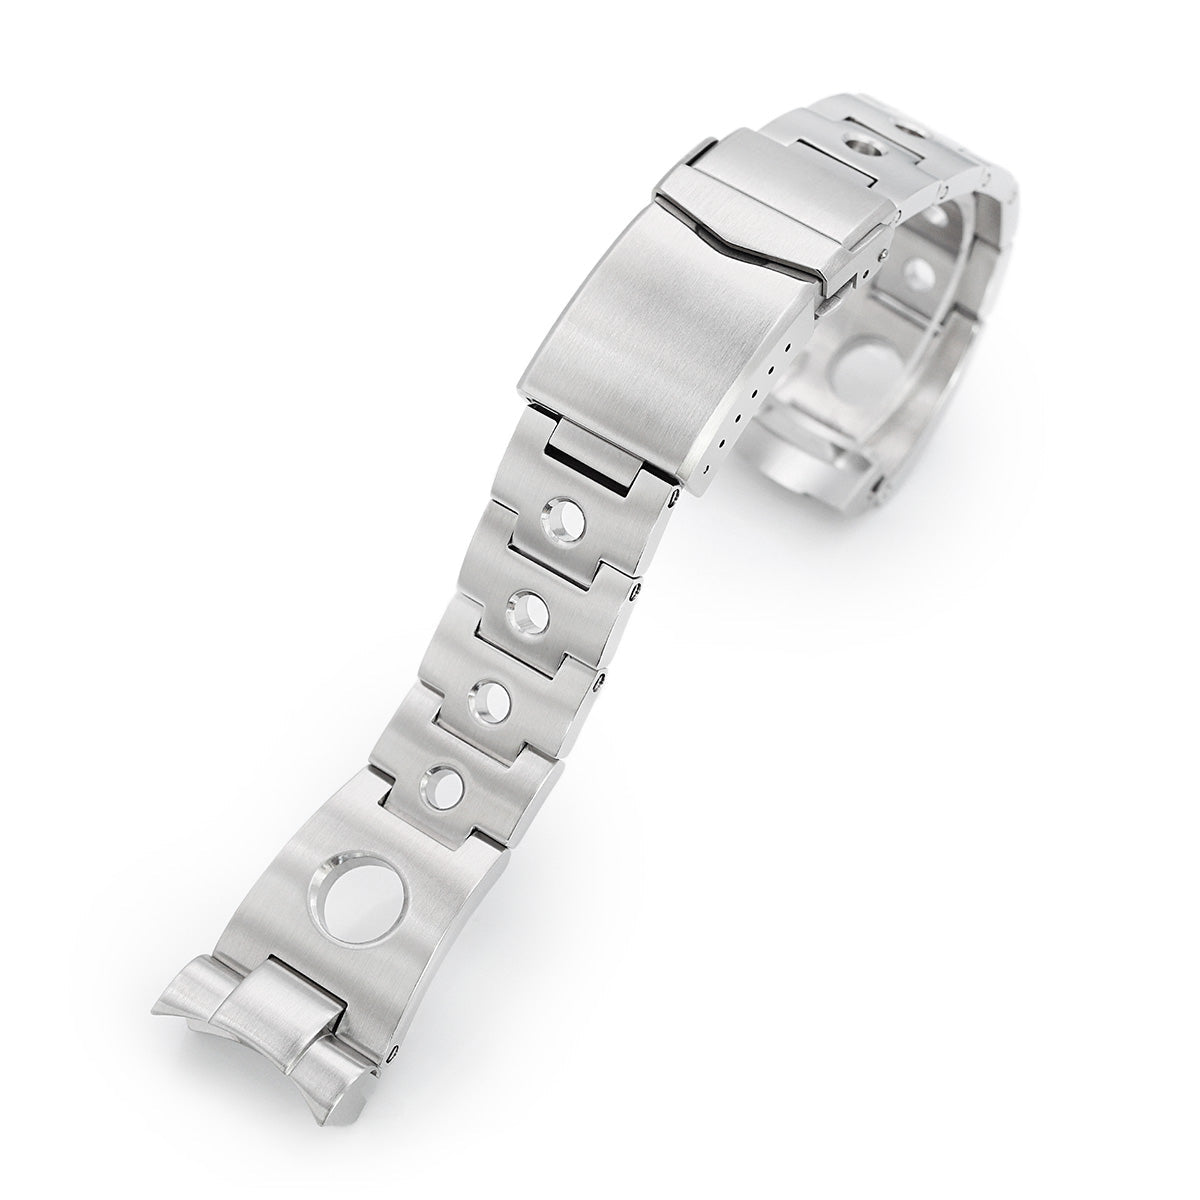 22mm Black Carbon Fiber Leather Watch Bands for Seiko Diver's SKX007, SKX009, SKX173, SRP777, SNZH55, SNZF15